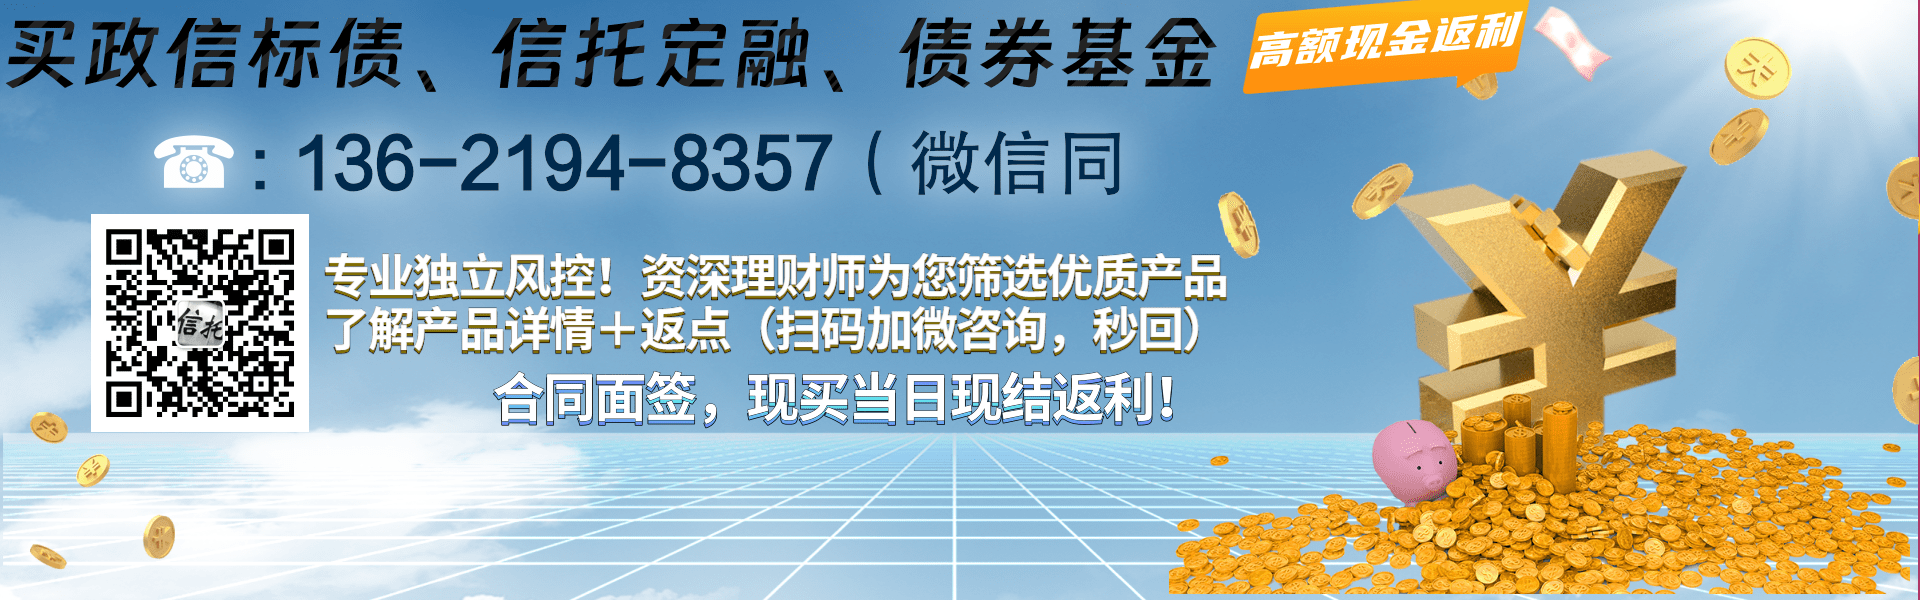 潍坊滨海新城公有资产经营管理债权1号